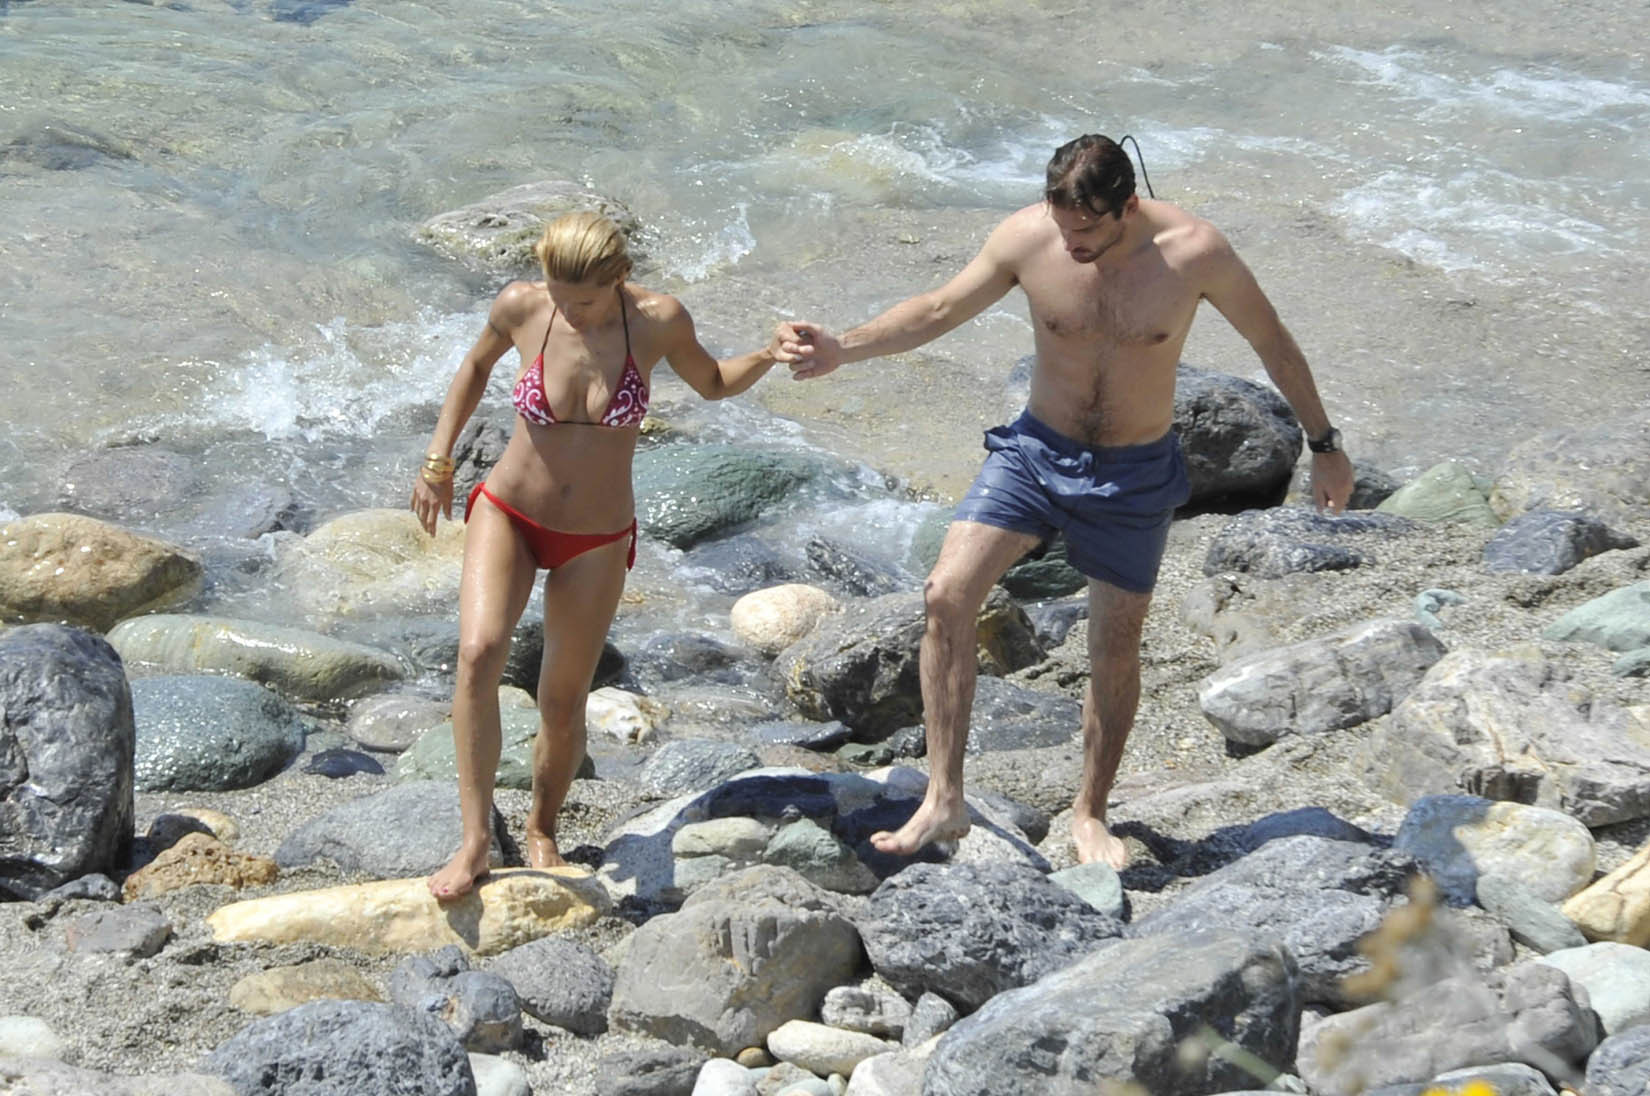 Michelle hunziker tetona con un bikini escaso en la playa de miami
 #75259576